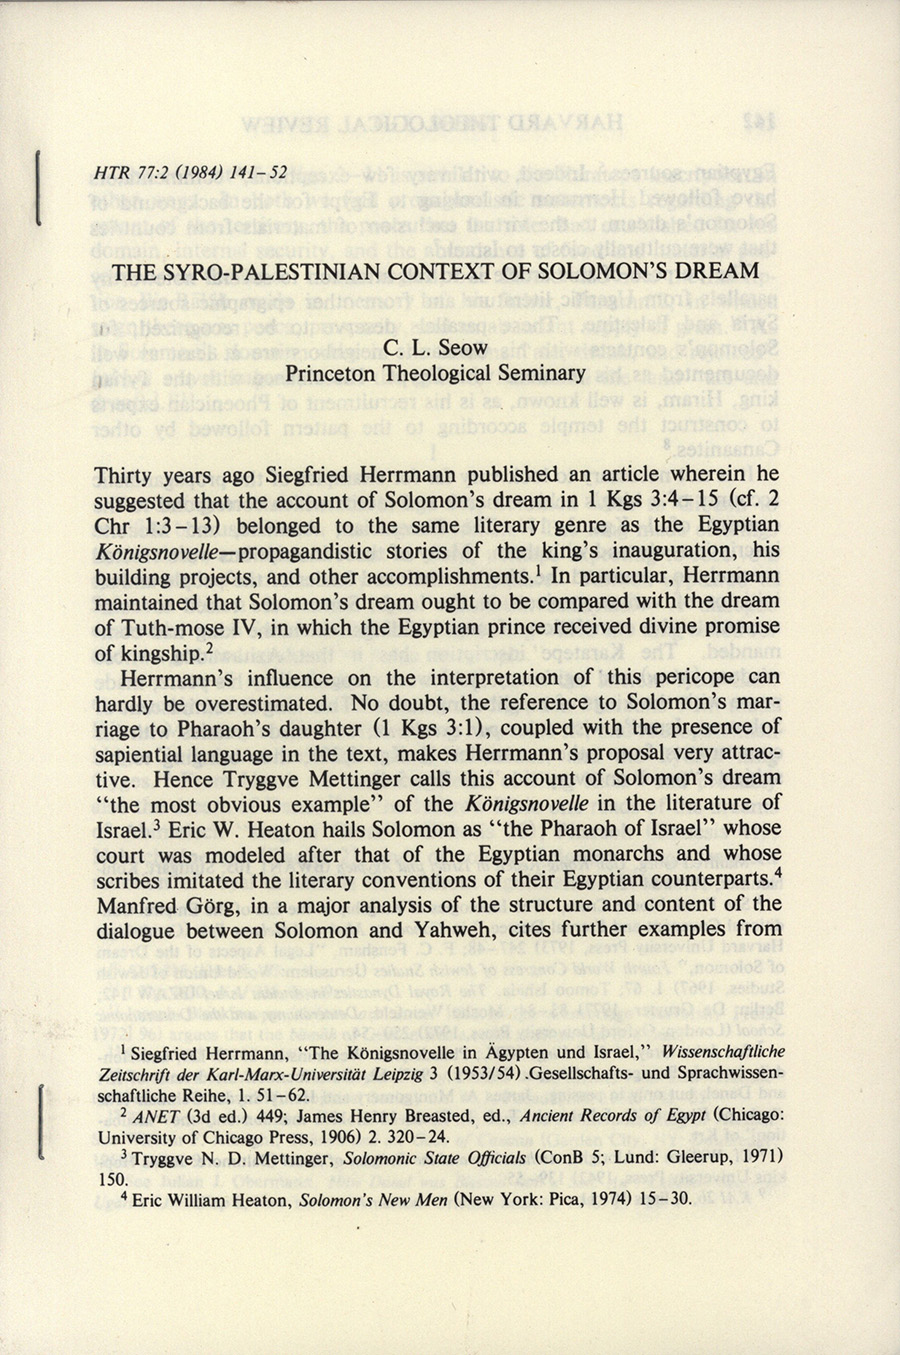 C.L. Seow, "Syro-Palestinian Context of Solomon's Dream"